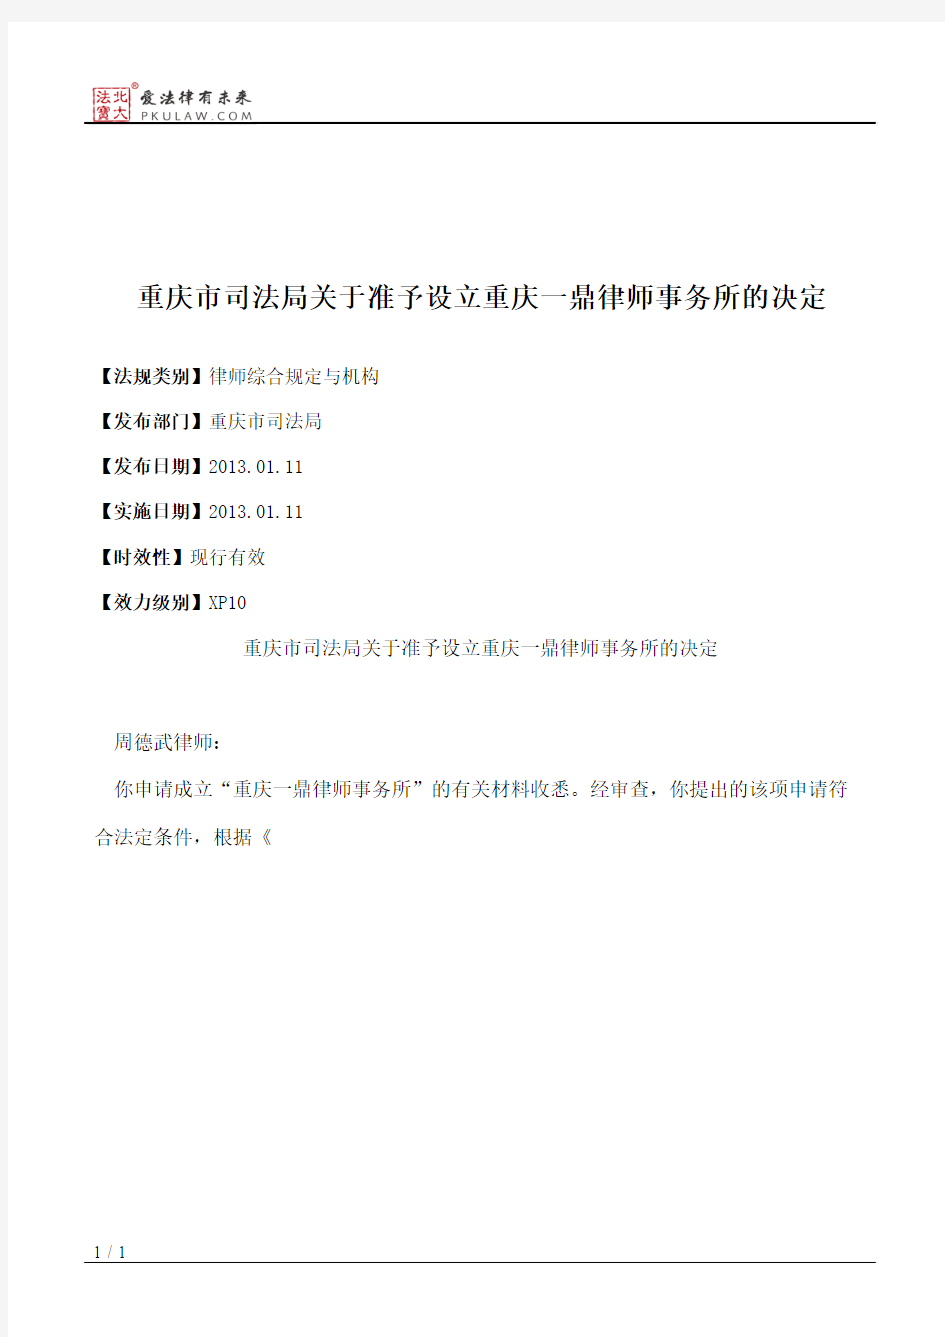 重庆市司法局关于准予设立重庆一鼎律师事务所的决定